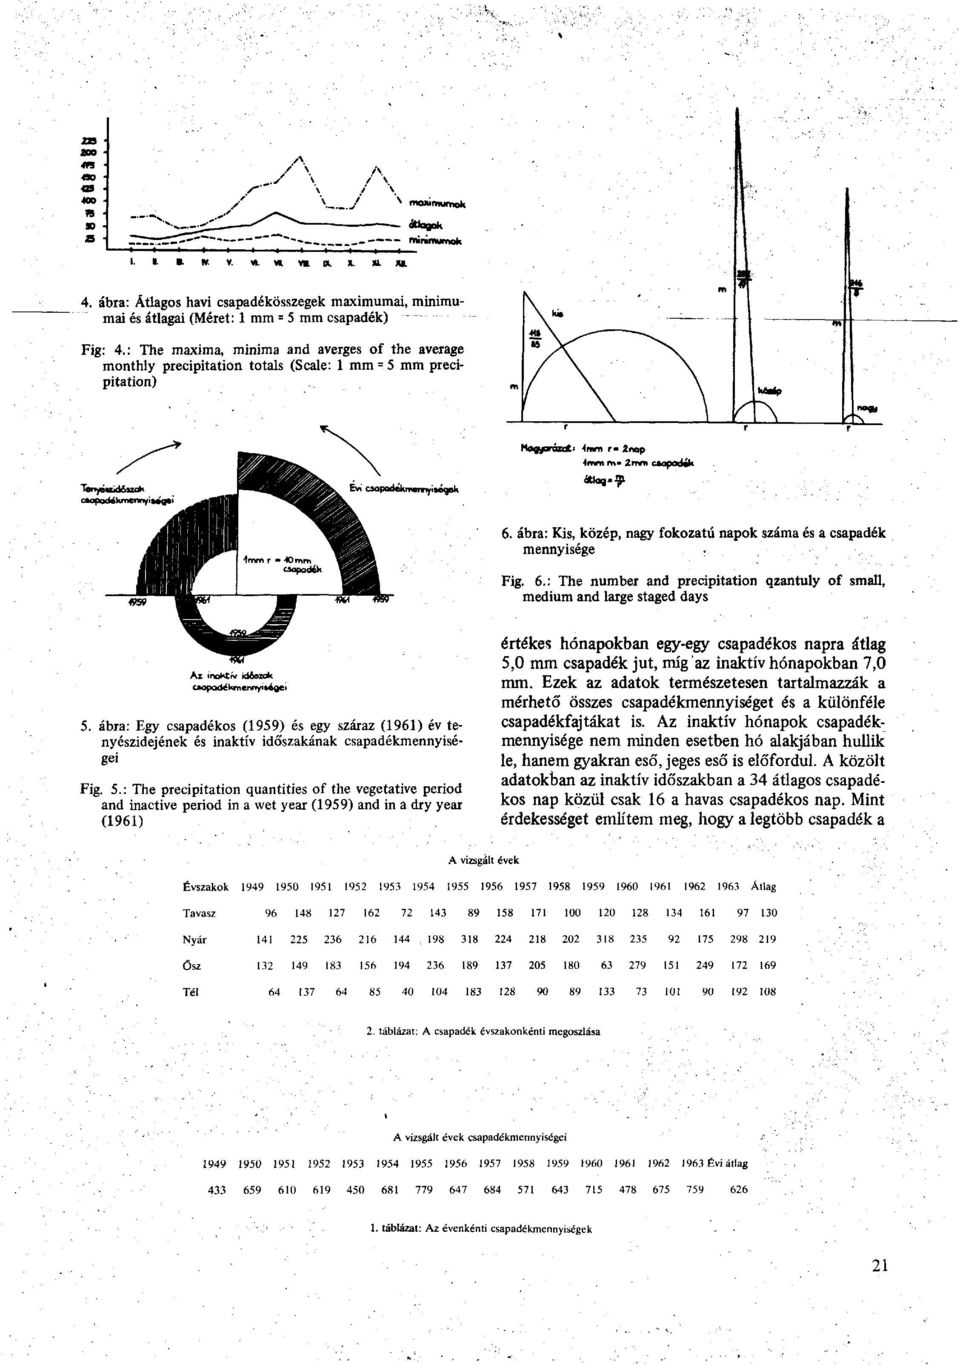 ábra: Egy csapadékos (1959) és egy száraz (1961) év tenyészidejének és inaktív időszakának csapadékmennyiségei Fig. 5.